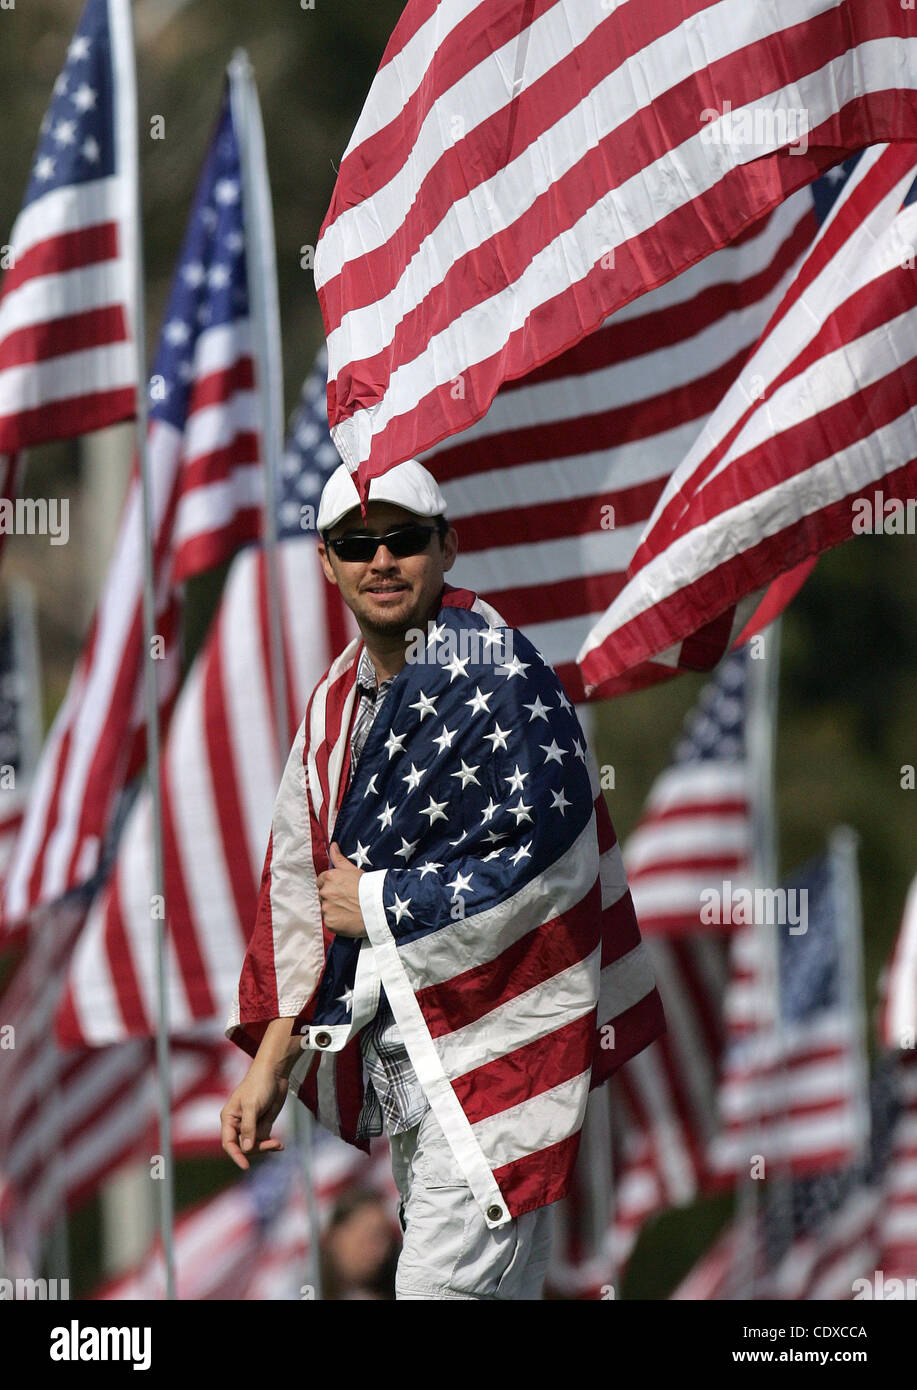 Michael Prince, 38, geht mit einer Fahne unter drei Tausenden von amerikanischen Flaggen an einem Denkmal zu Ehren der Opfer der Terroranschläge 11. September 2001, eingestellt auf Sonntag, 11. September 2011 von Freiwilligen auf dem Campus Rasen der Pepperdine University in Malibu, Kalifornien. (Foto von Ringo Chiu / Zuma Press) Stockfoto